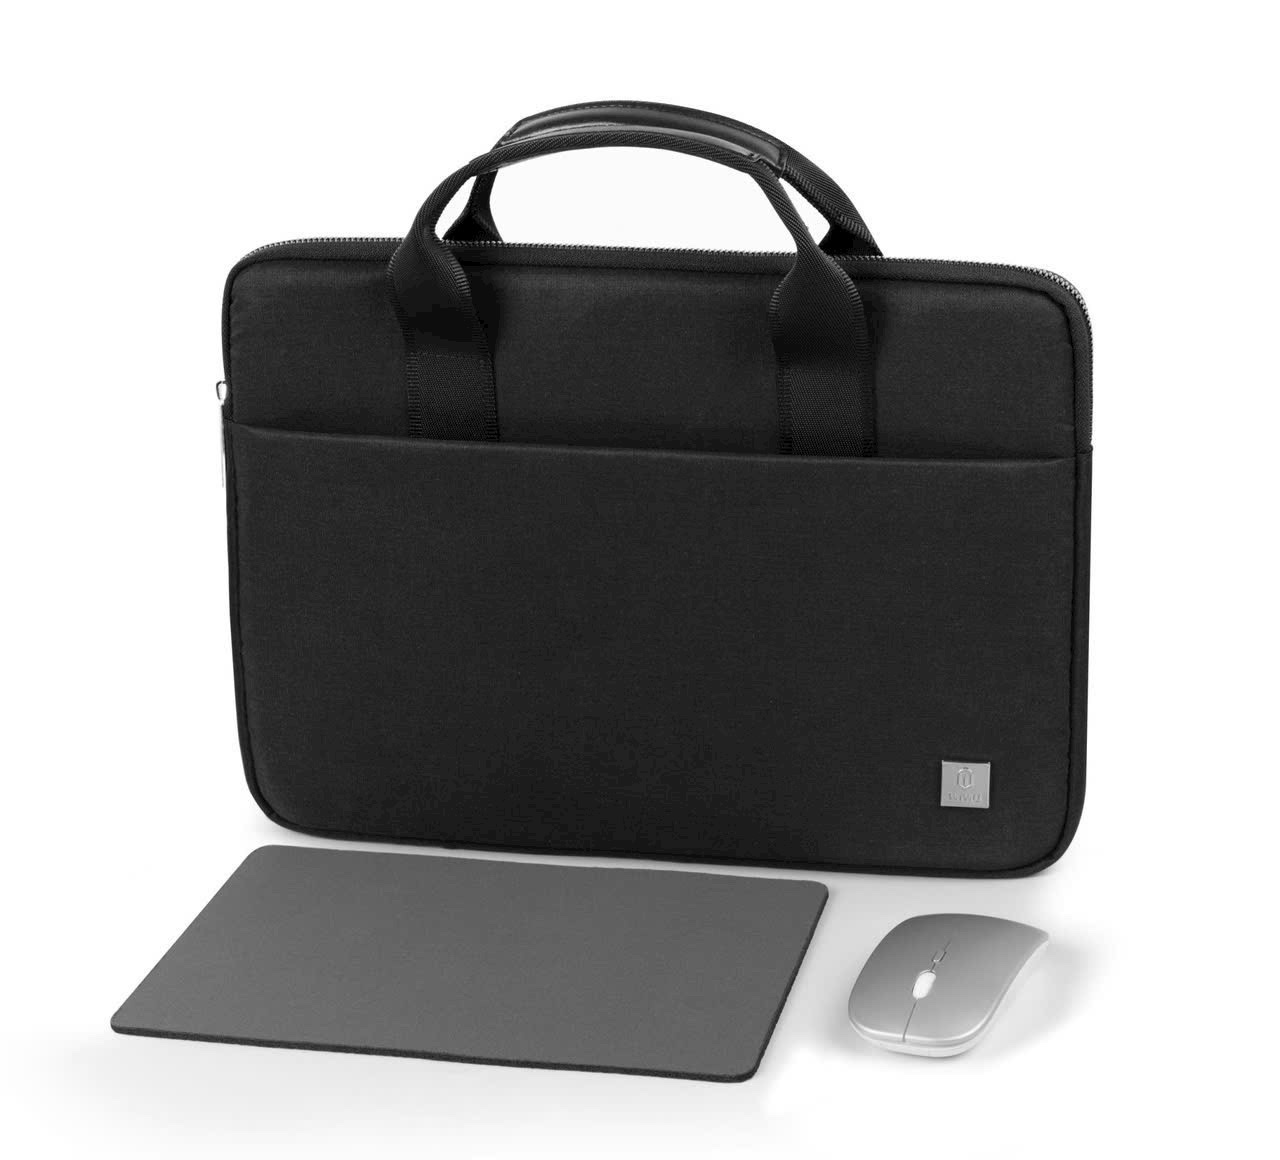 Túi Wiwu Genius Combo Set 3 in 1 cho laptop, macbook gồm túi chống sốc + chuột + lót chuột, làm bằng Polyester chống nước, nhẹ và chống mài mòn - Hàng chính hãng